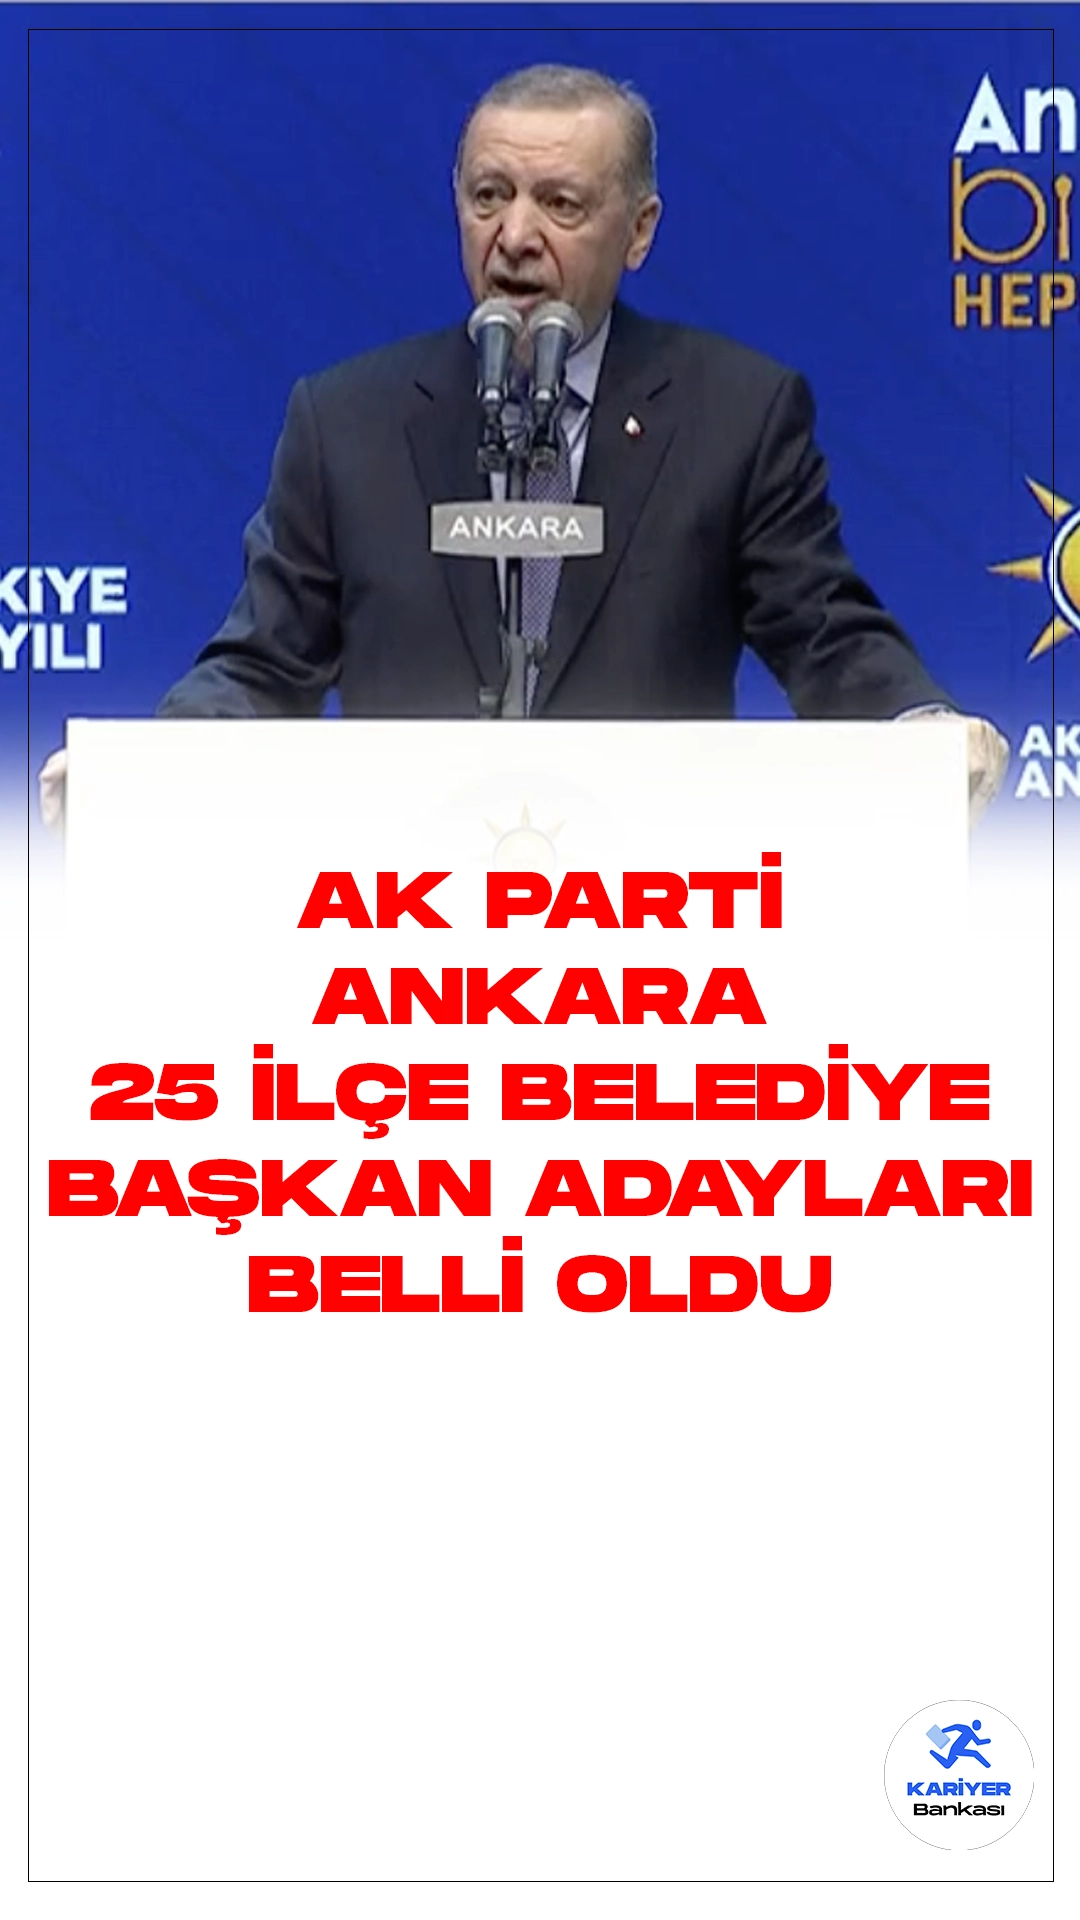 AK Parti Ankara 25 İlçe Belediye Başkan Adayları Açıklandı.Cumhurbaşkanı ve AK Parti Genel Başkanı Recep Tayyip Erdoğan, önemli bir adım atarak Ankara ilçelerinin yerel yönetimlerini şekillendirecek adaylarını belirledi. Erdoğan ATO Congresium'da gerçekleştirilen AK Parti Ankara İlçe Belediye Başkan Adayları Tanıtım Toplantısı'na katılarak, seçimlerin kaderini etkileyecek isimleri kamuoyuyla paylaştı.